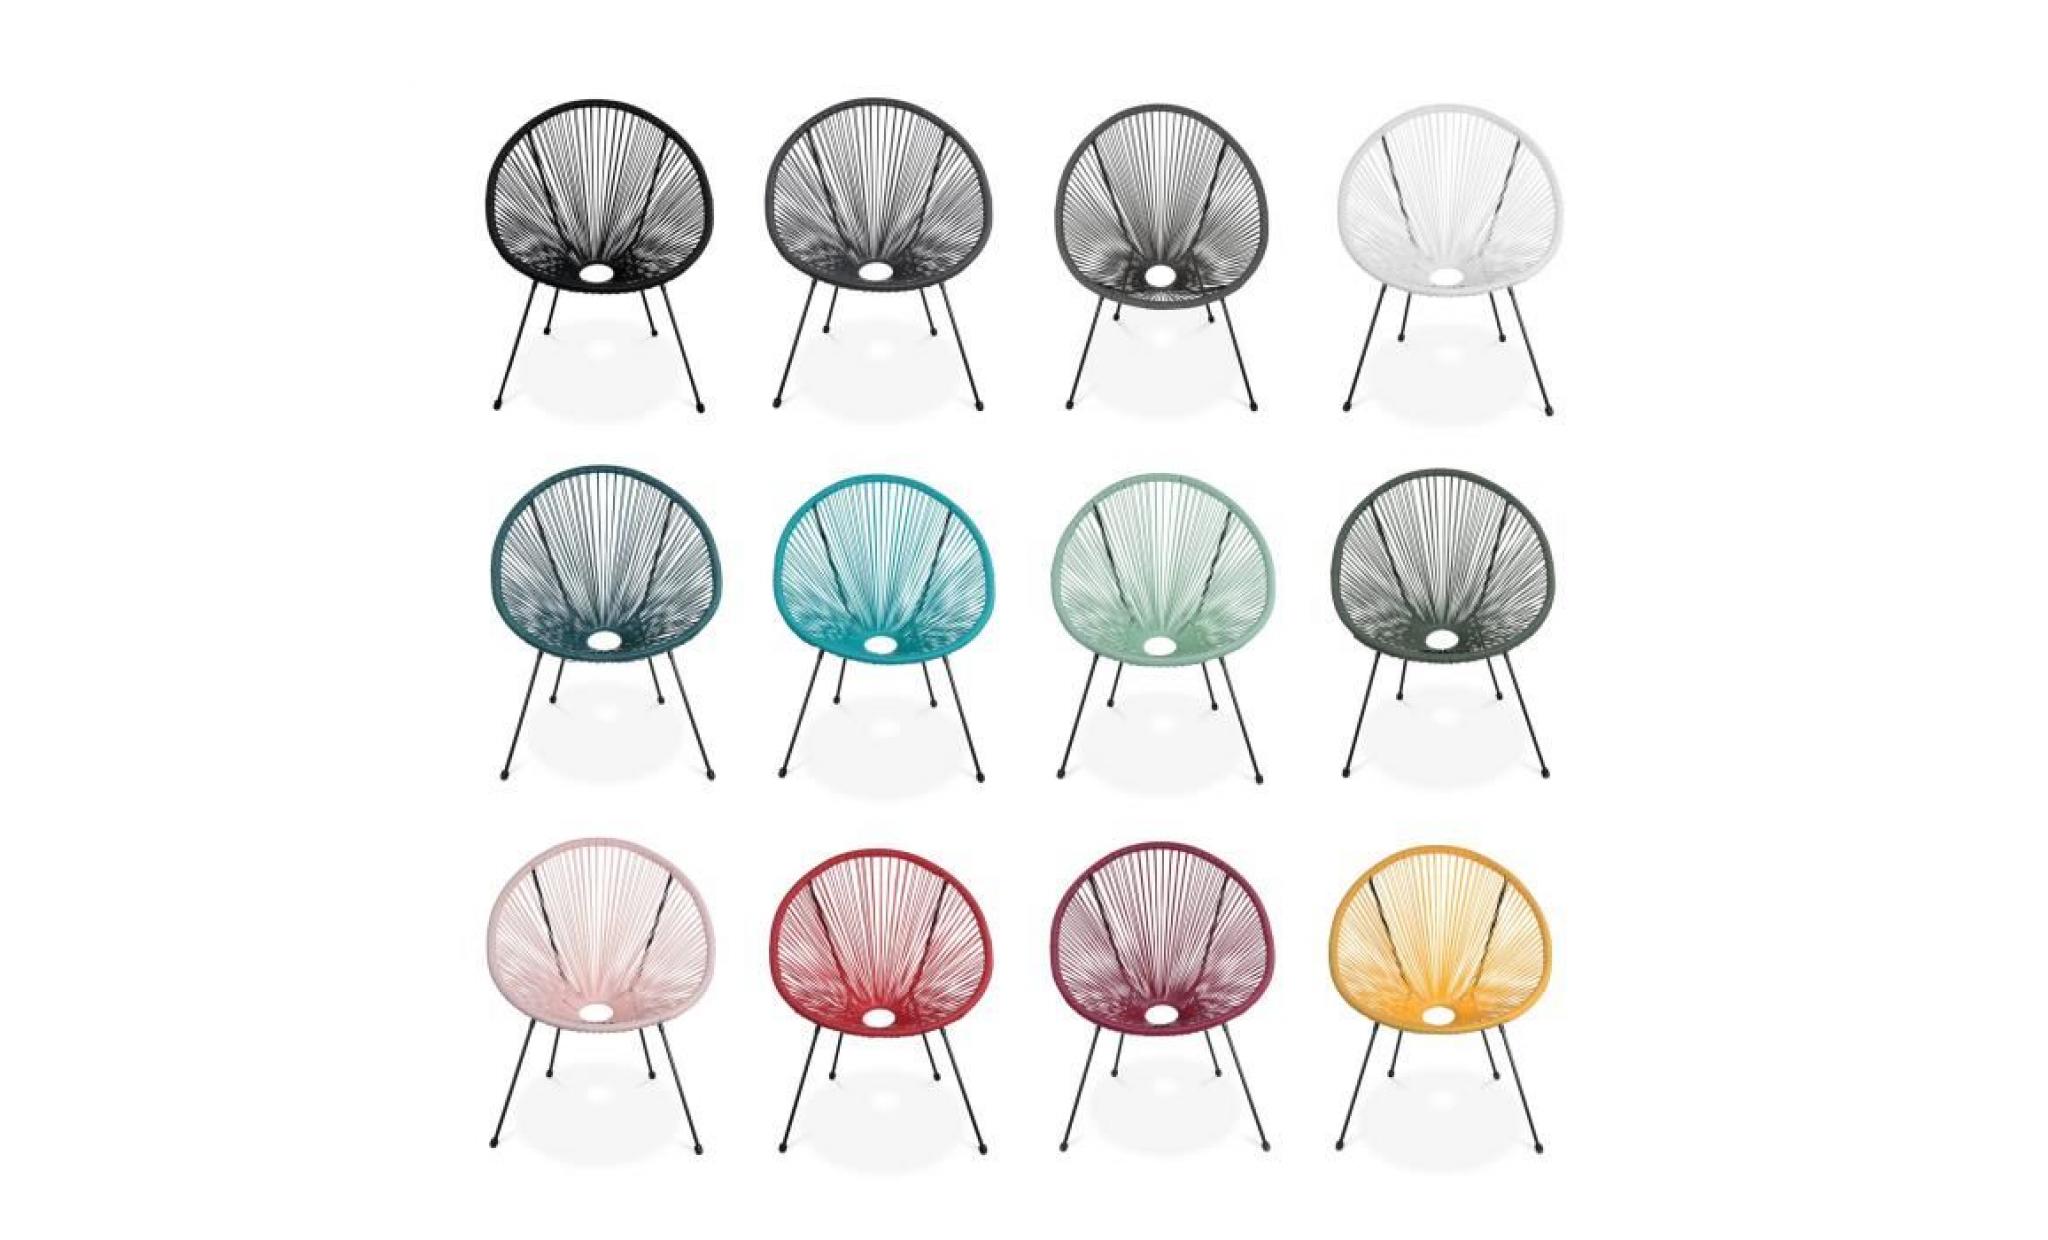 lot de 2 fauteuils design oeuf   acapulco vert de gris   fauteuils 4 pieds design rétro, cordage plastique, intérieur / extérieur pas cher